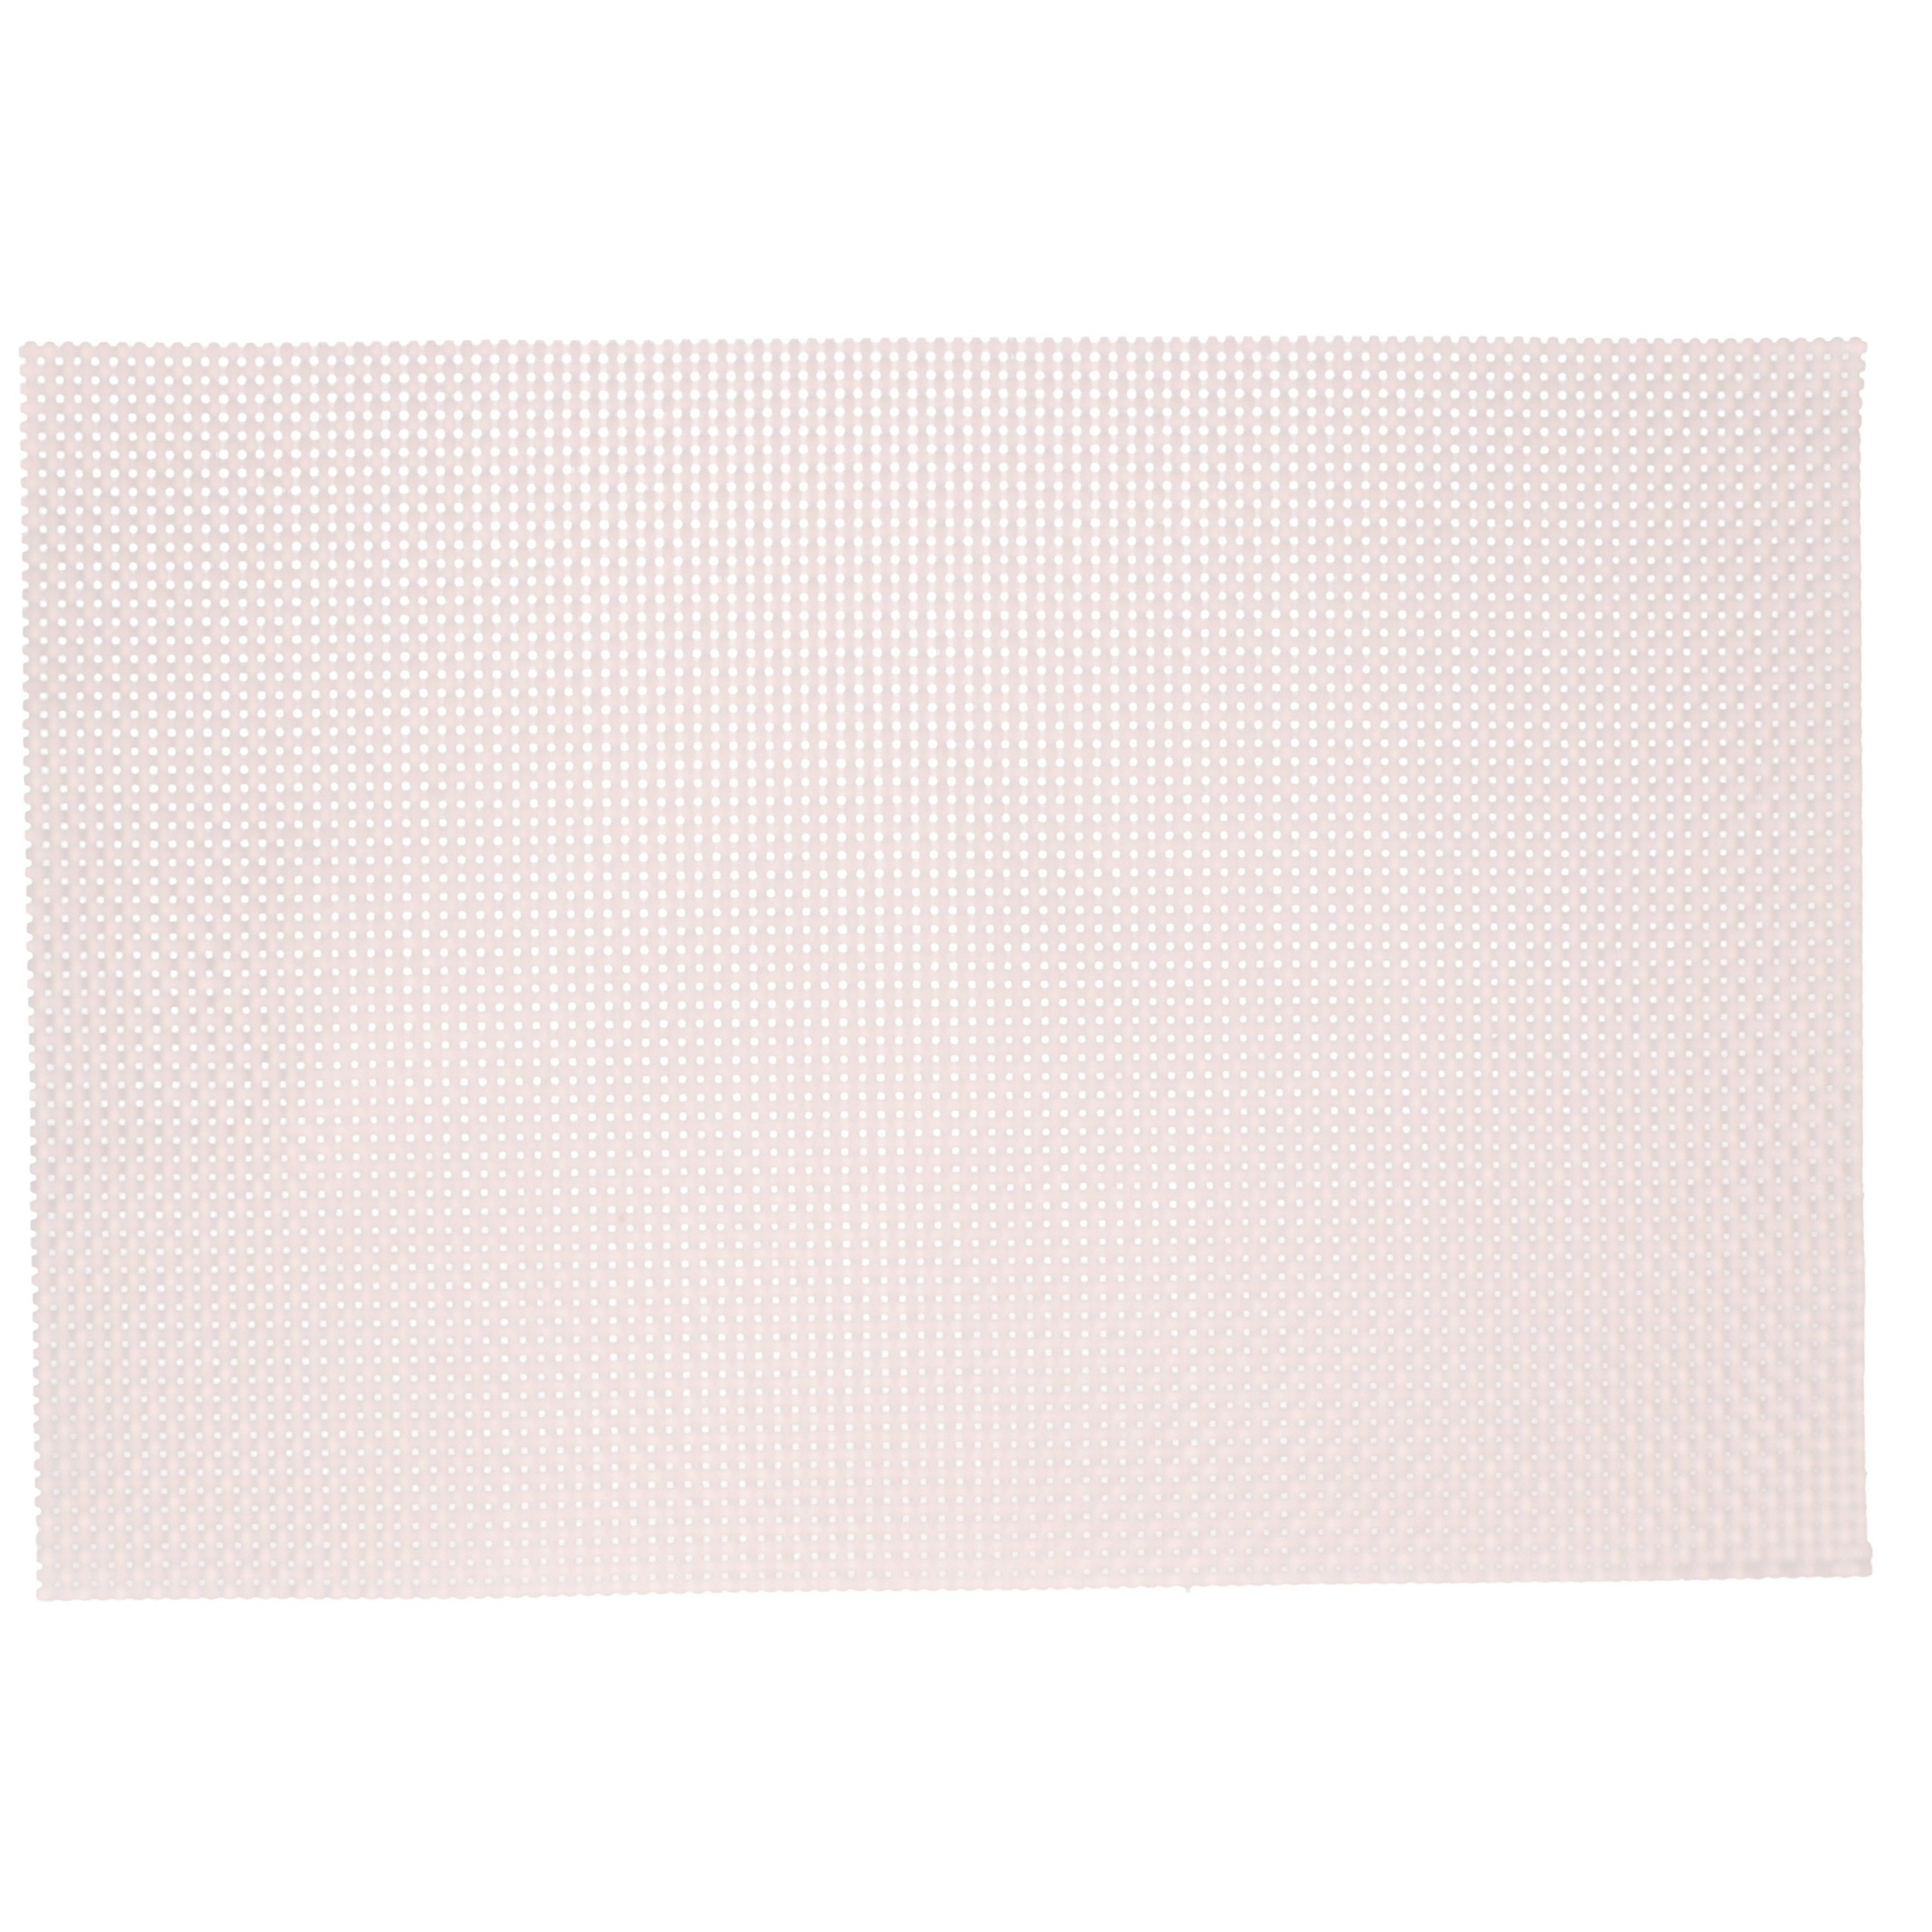 Kesper 12x Rechthoekige placemats lichtroze parelmoer glans geweven 29 x 43 cm -